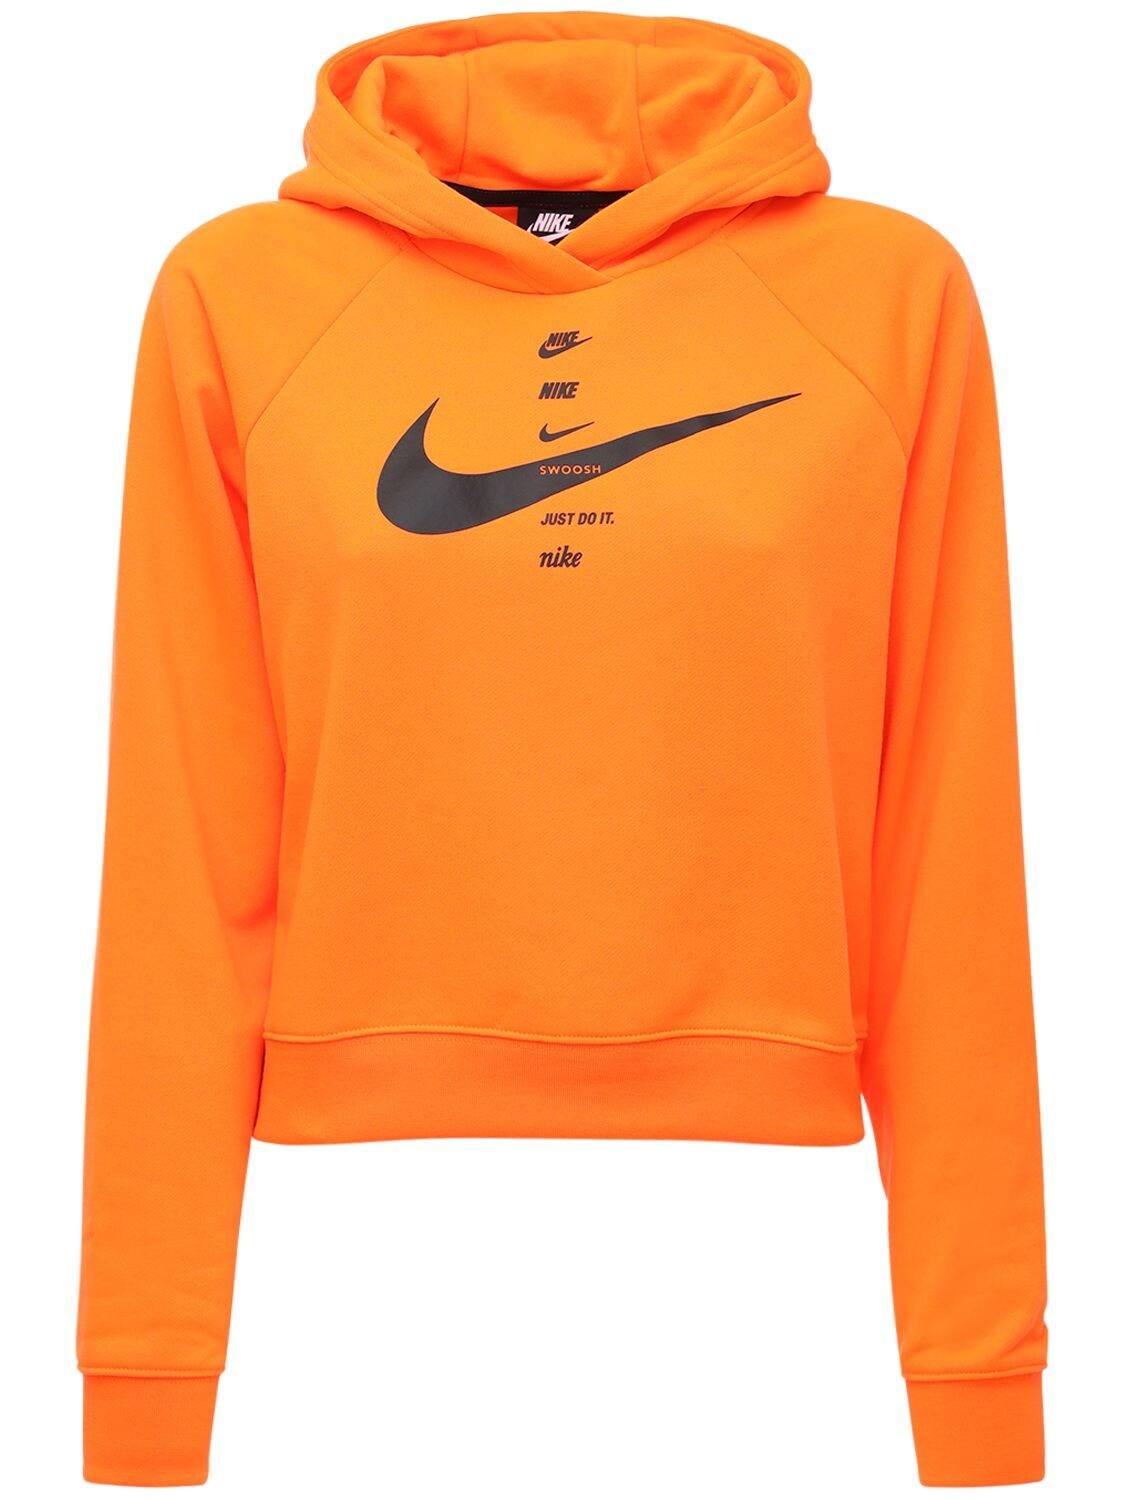 Nike Swoosh Print Sweatshirt Hoodie in Orange - Lyst